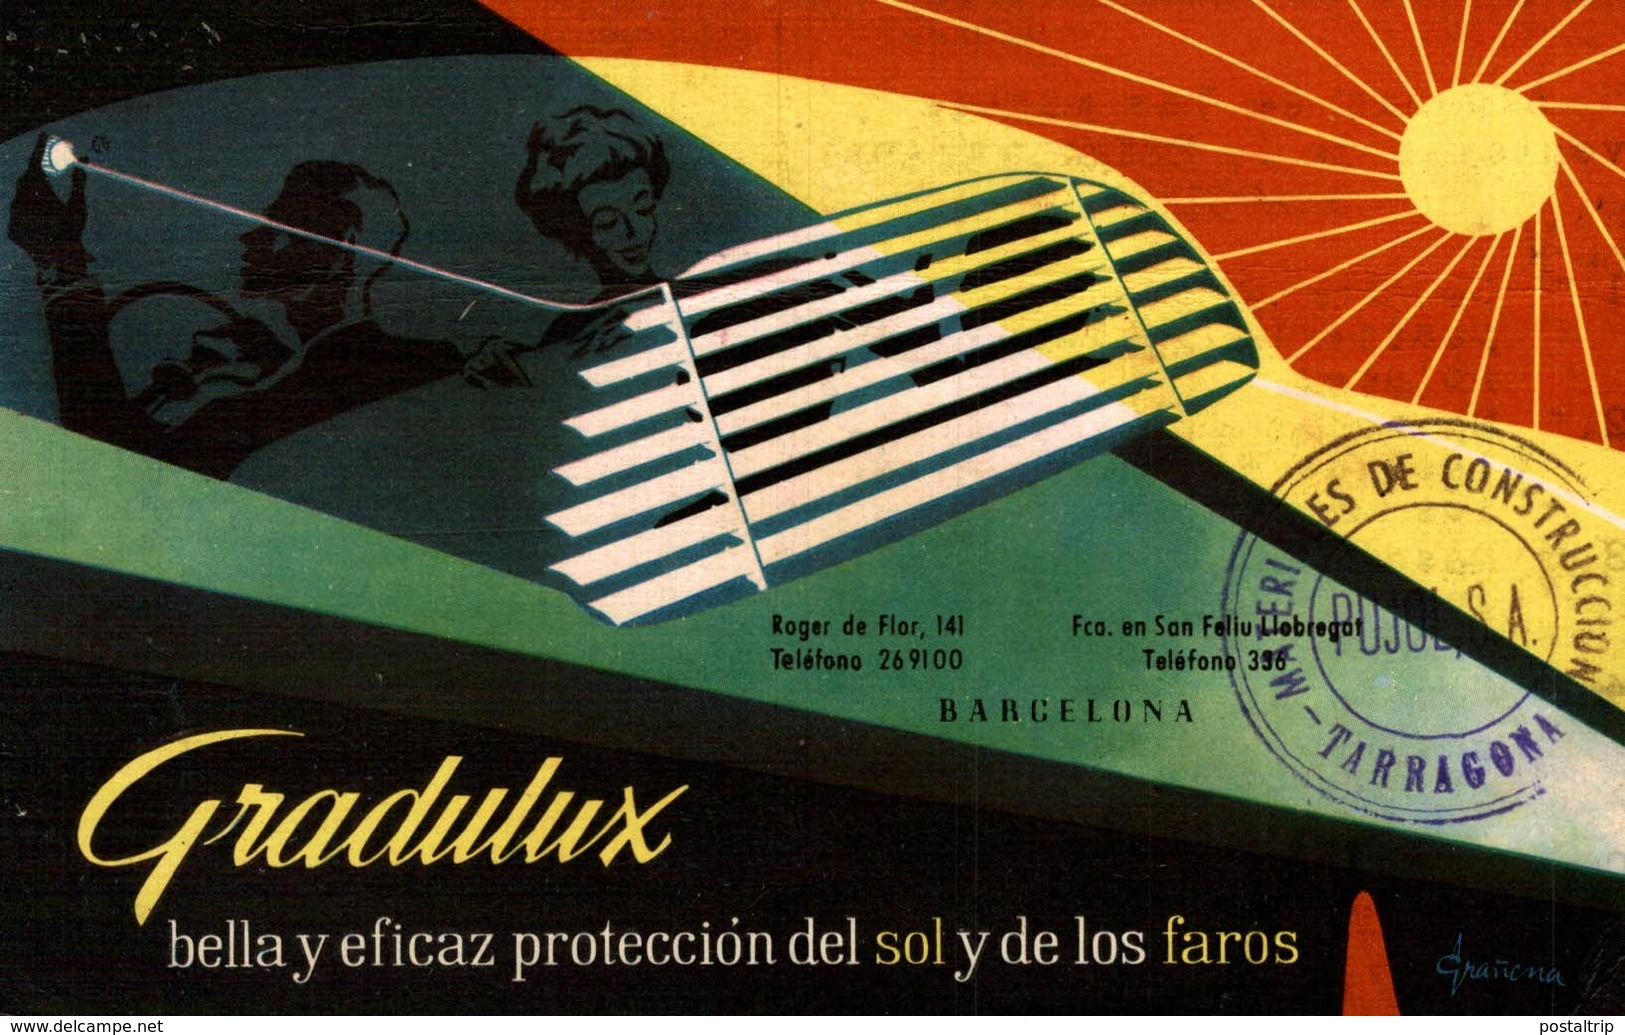 Gradulux, Proteccion Del Sol Y De Los Faros   PUBLICIDAD  PUBLICITARIA. - Publicité